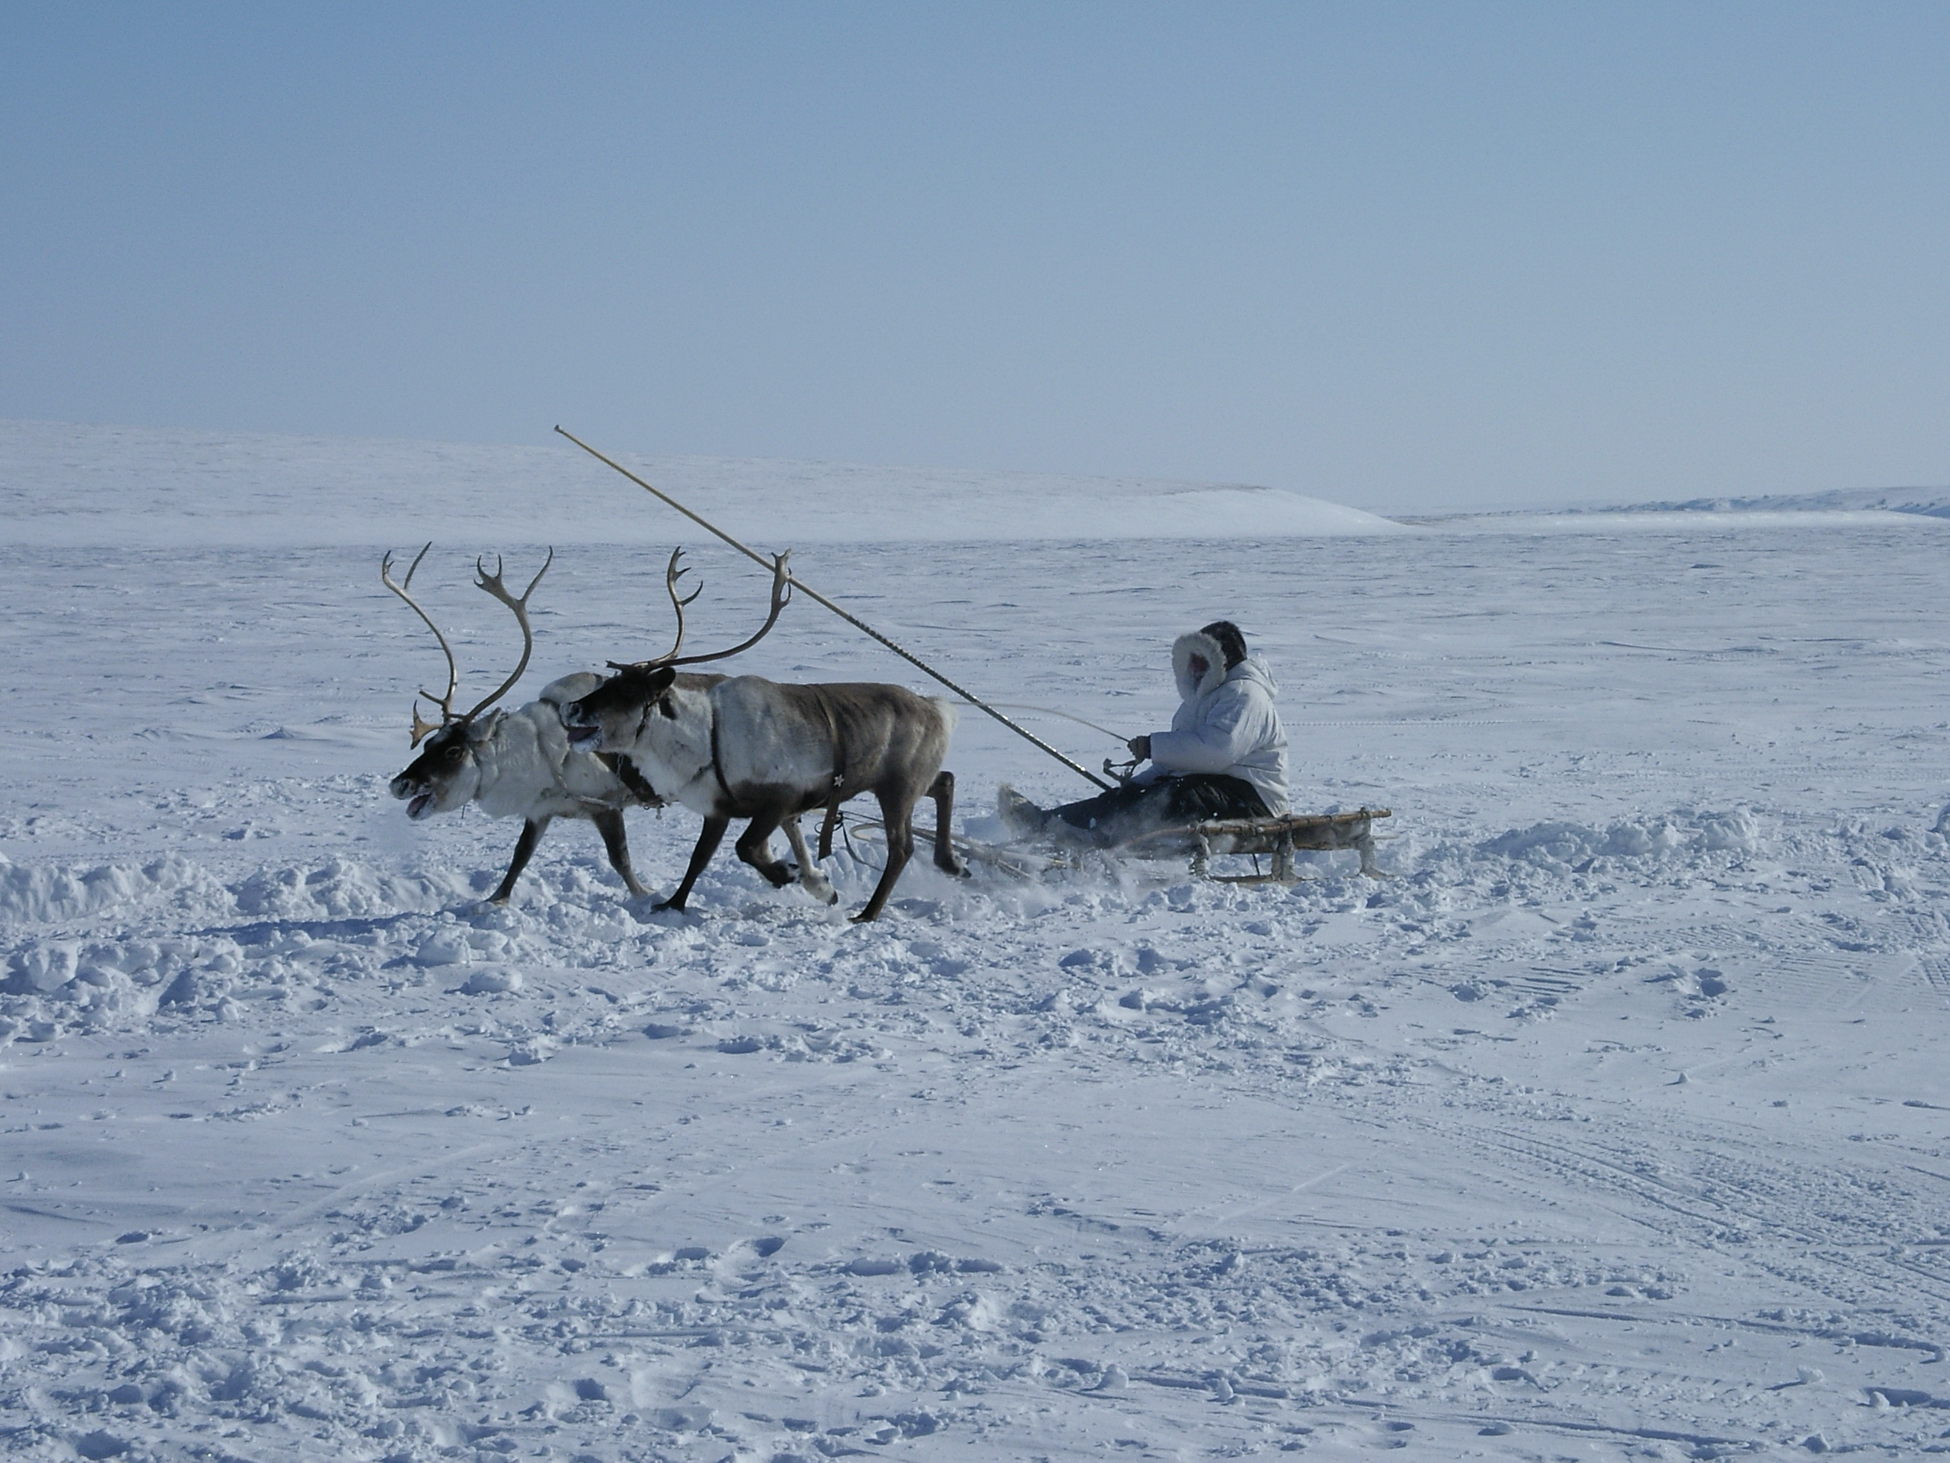 Эксперты обсудили роль коренных народов в развитии российской Арктики